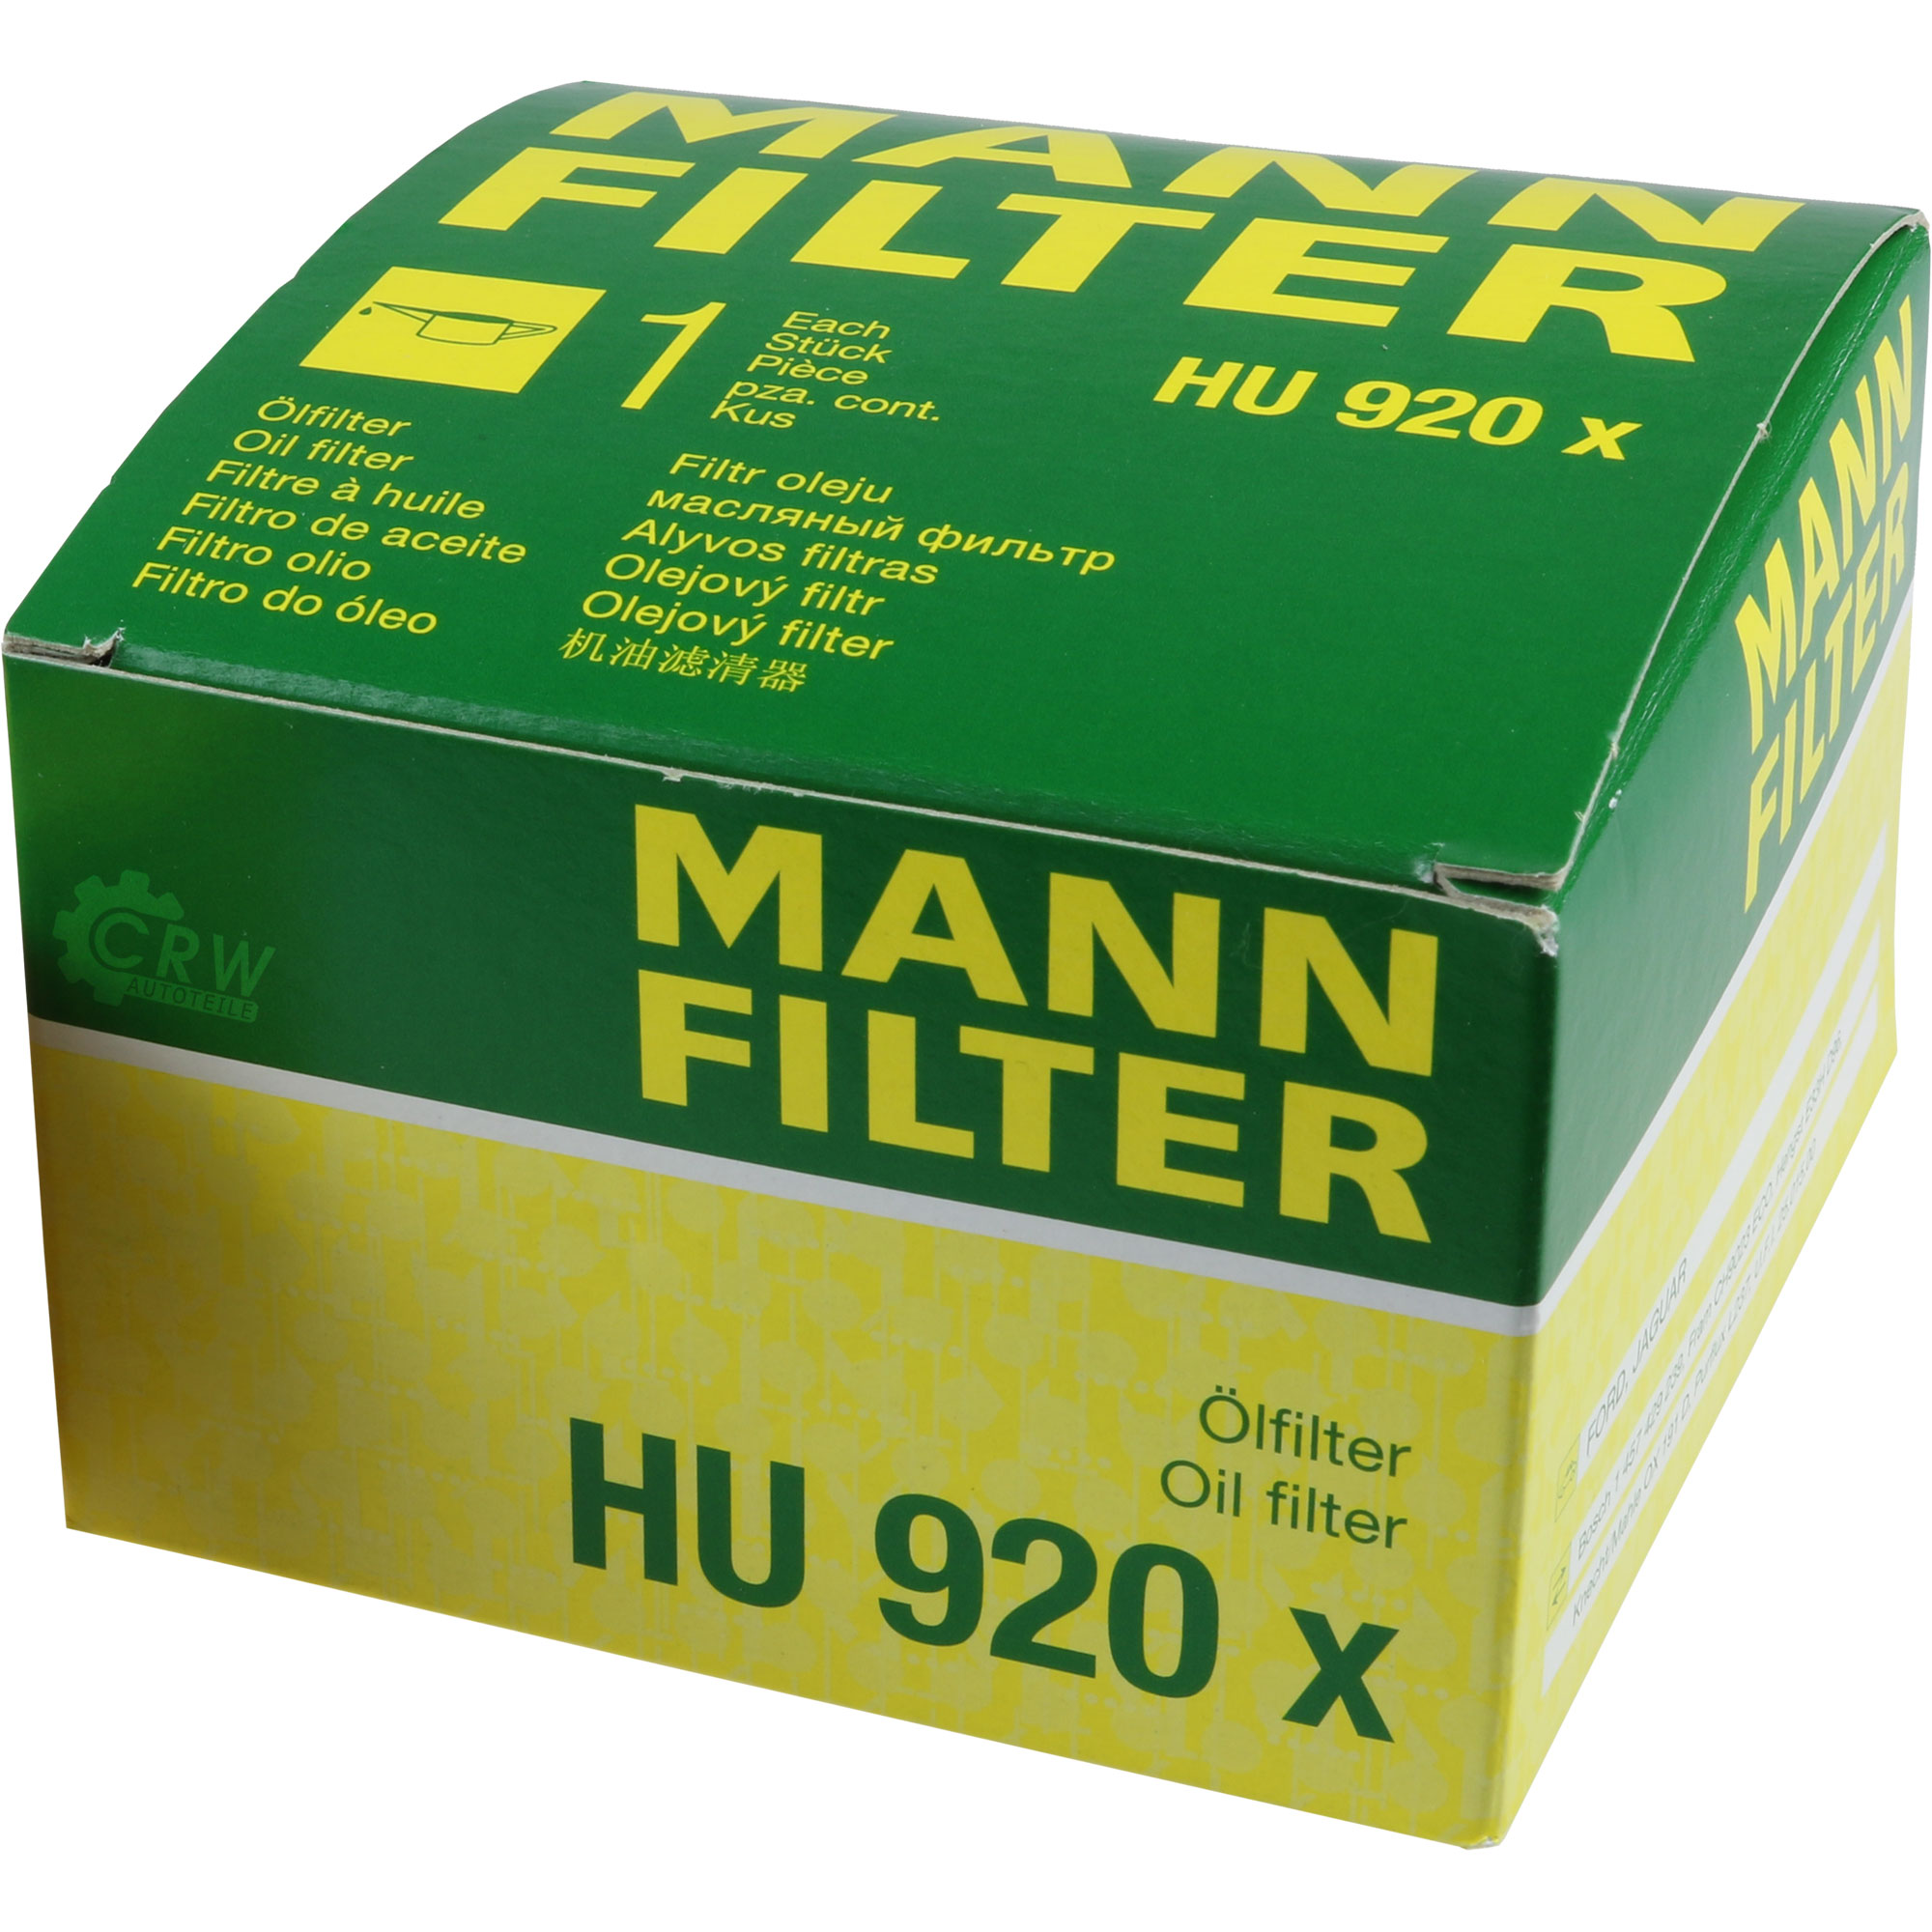 MANN-FILTER Ölfilter HU 920 x Oil Filter